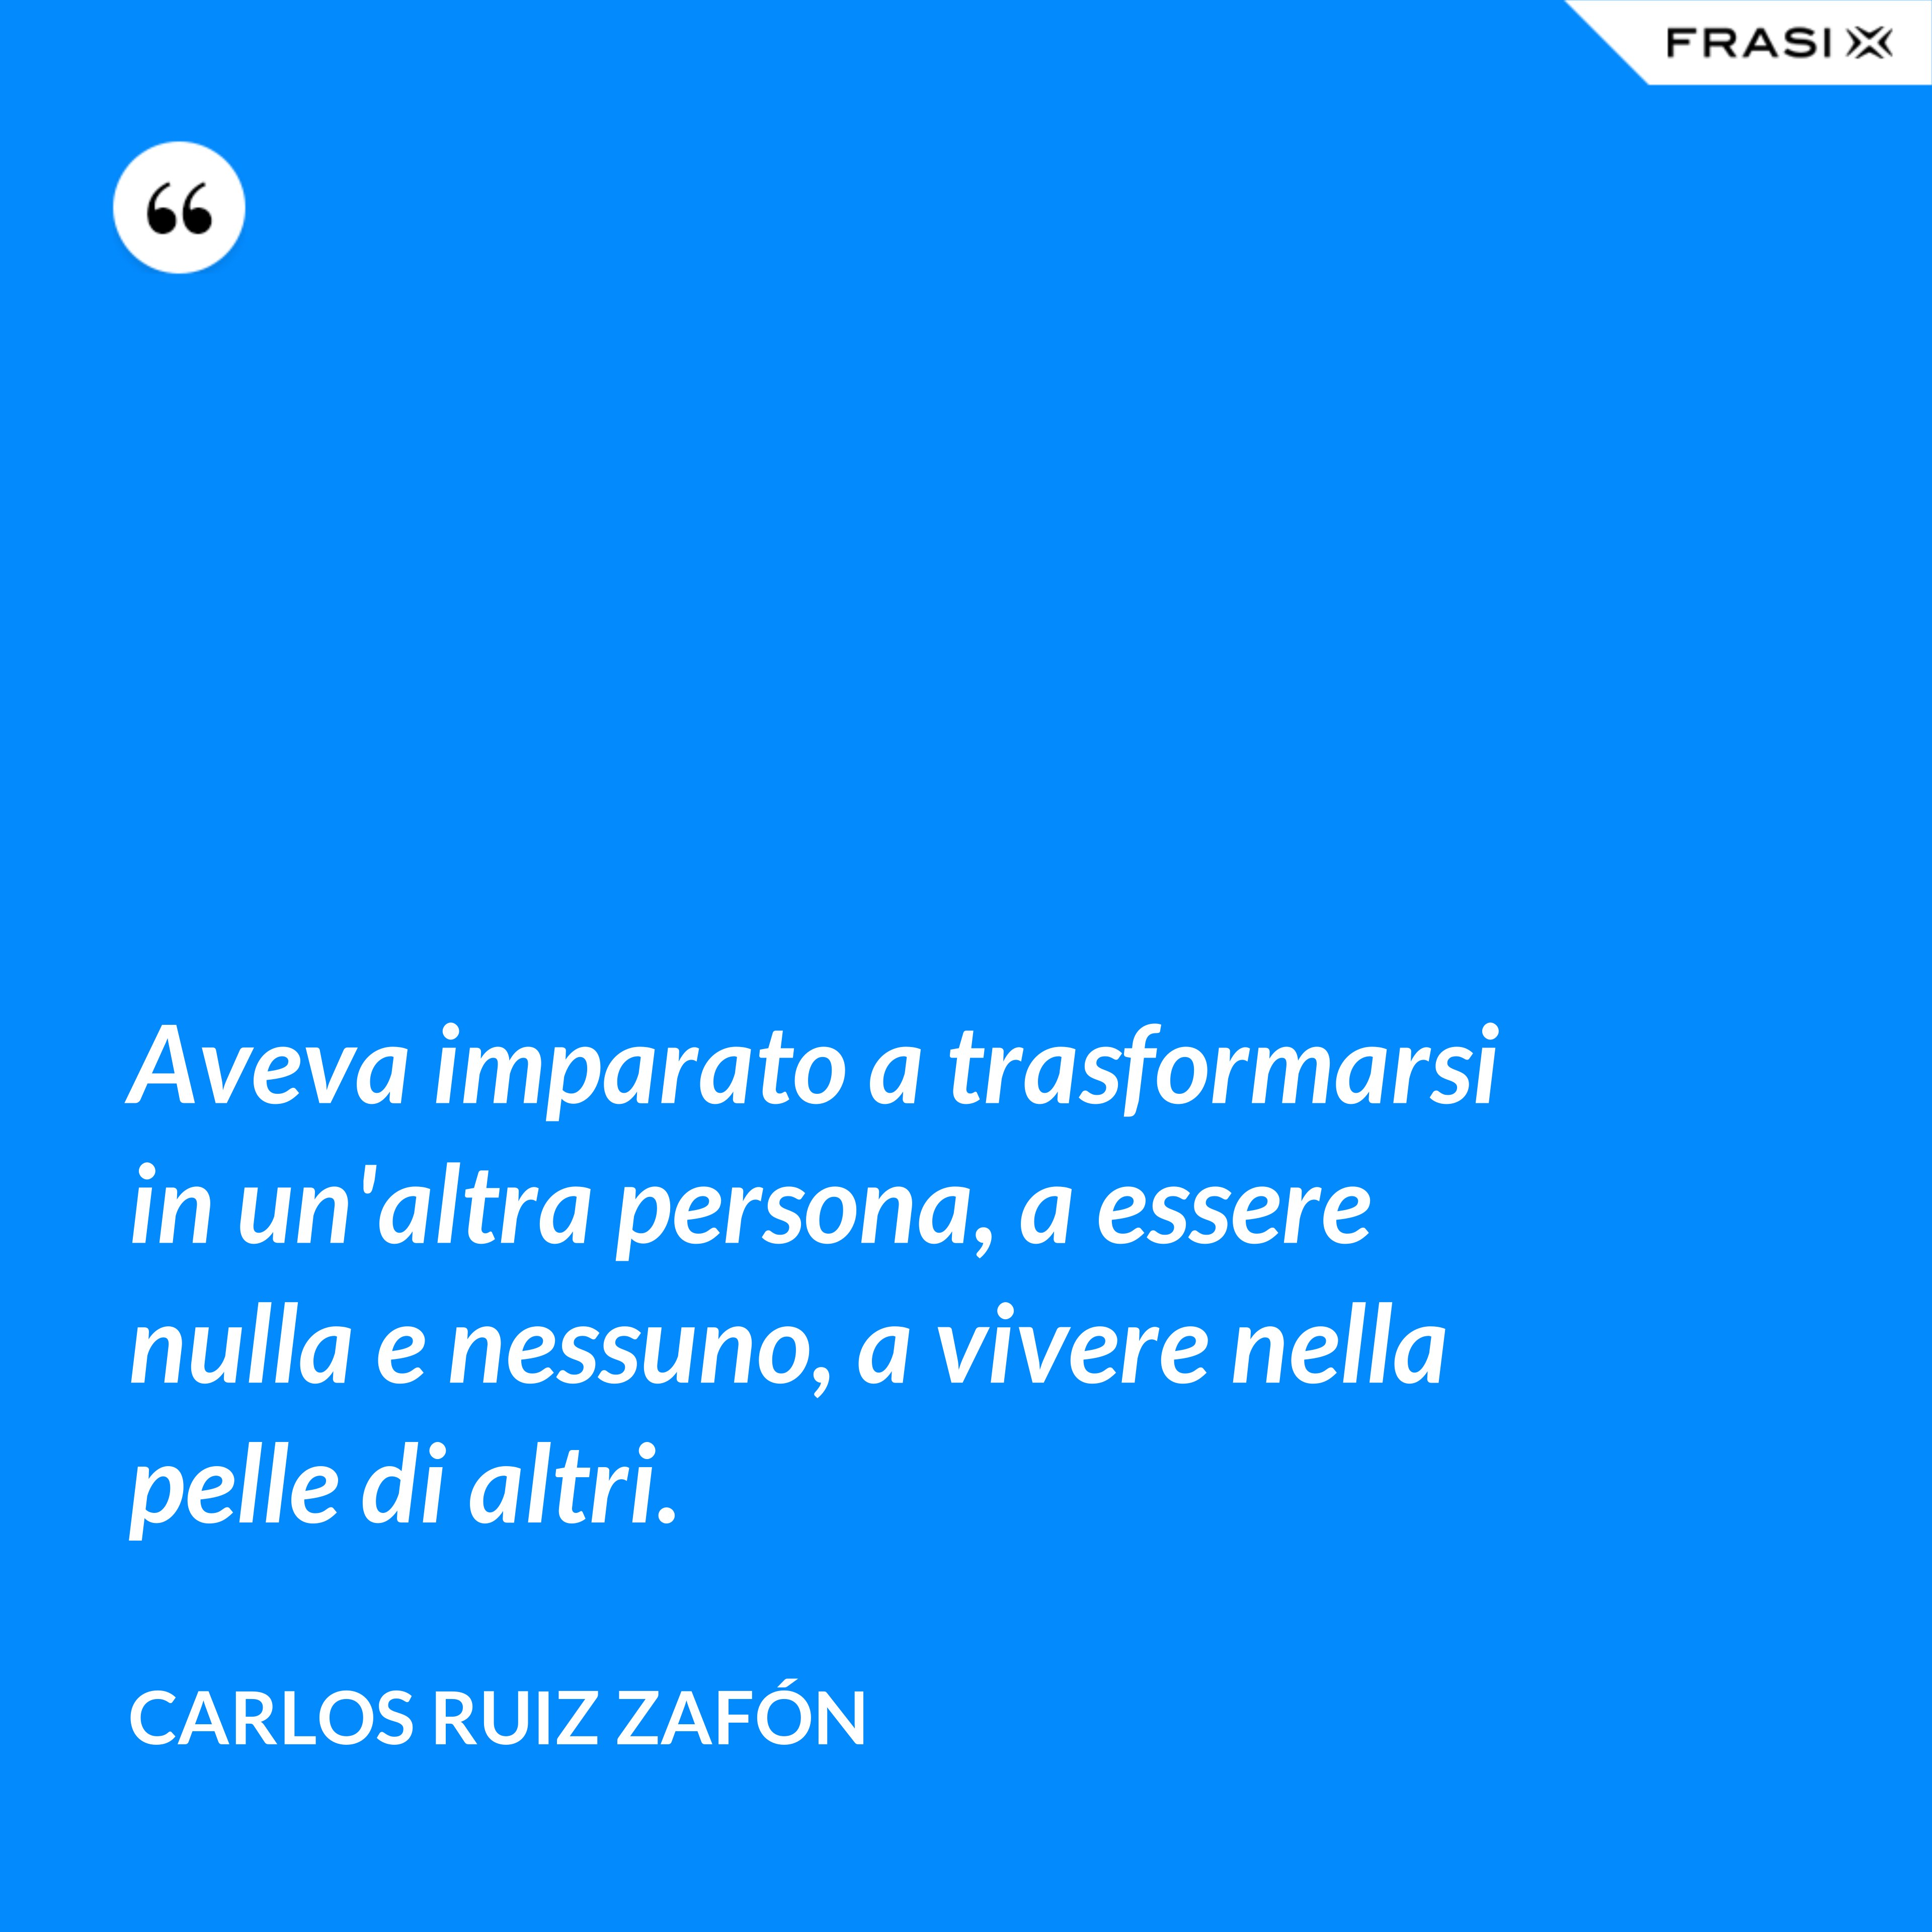 Aveva imparato a trasformarsi in un'altra persona, a essere nulla e nessuno, a vivere nella pelle di altri. - Carlos Ruiz Zafón